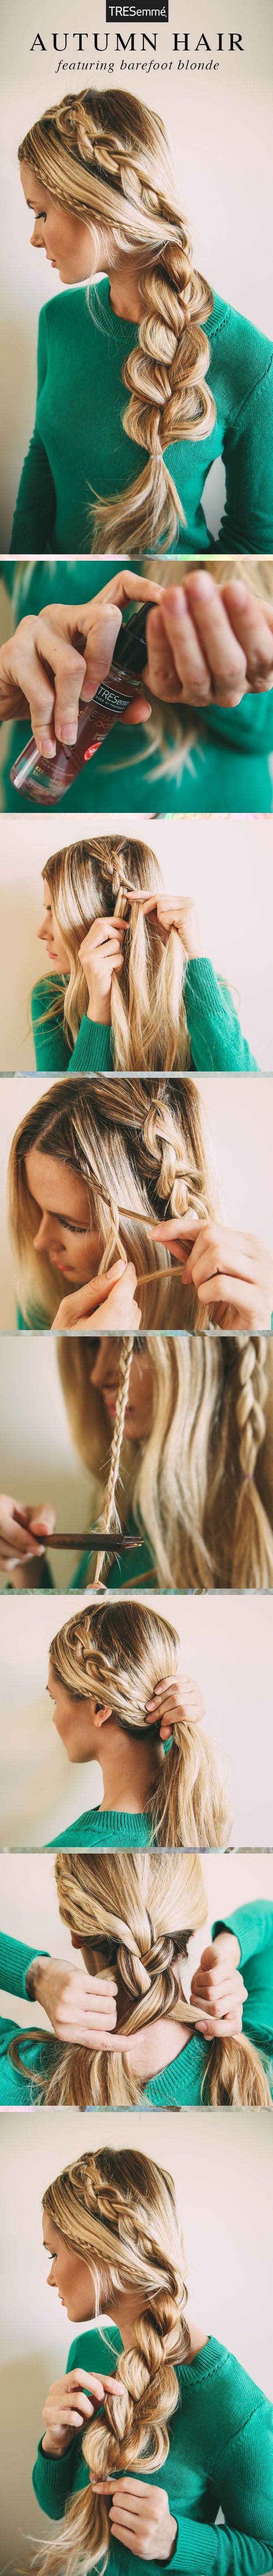 DIY-Nice-Blonde-Hairstyle-Step-by-Step-Hair-Tutorial